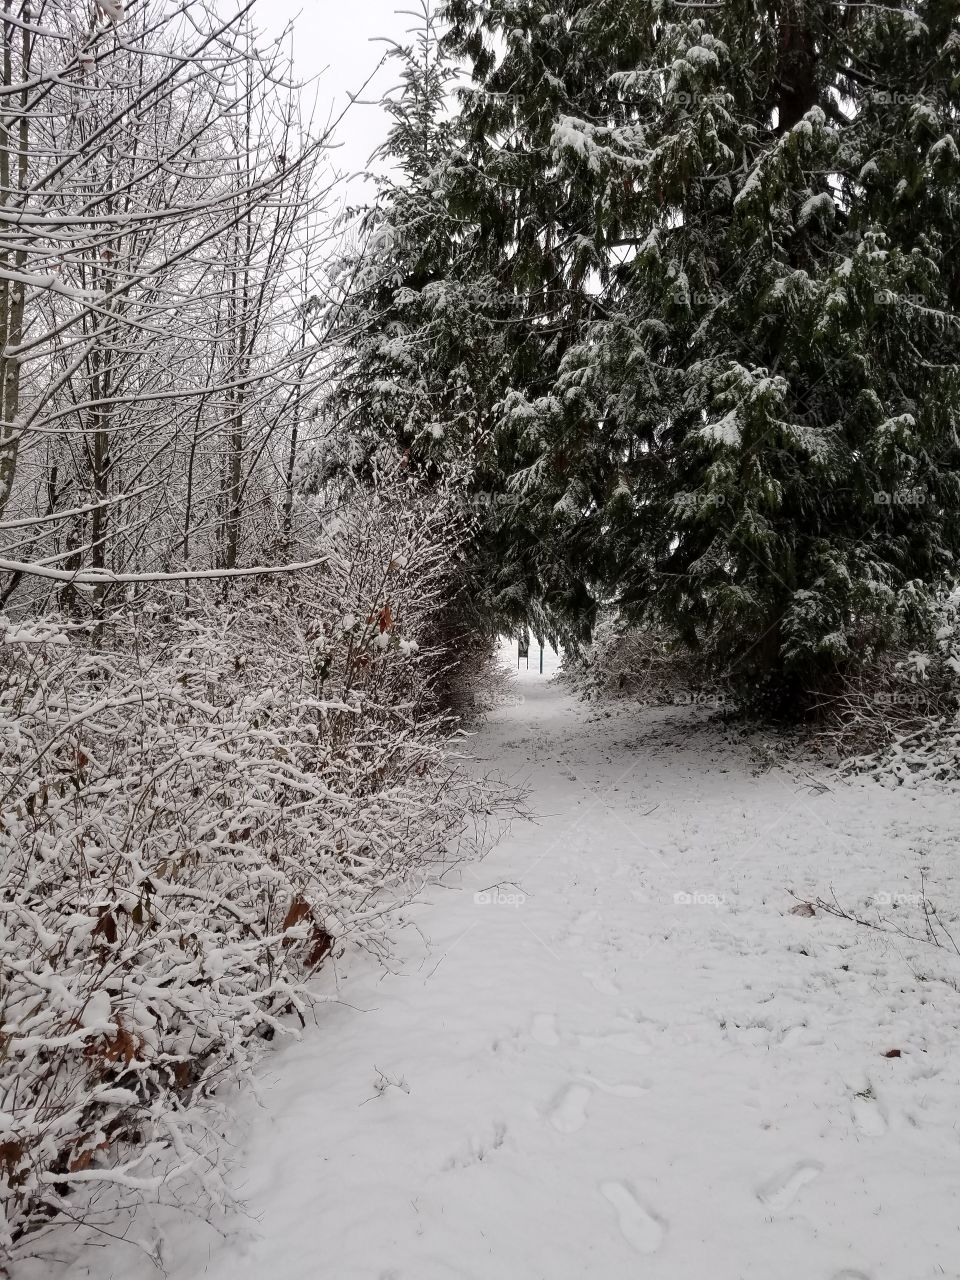 A stroll down winter lane.